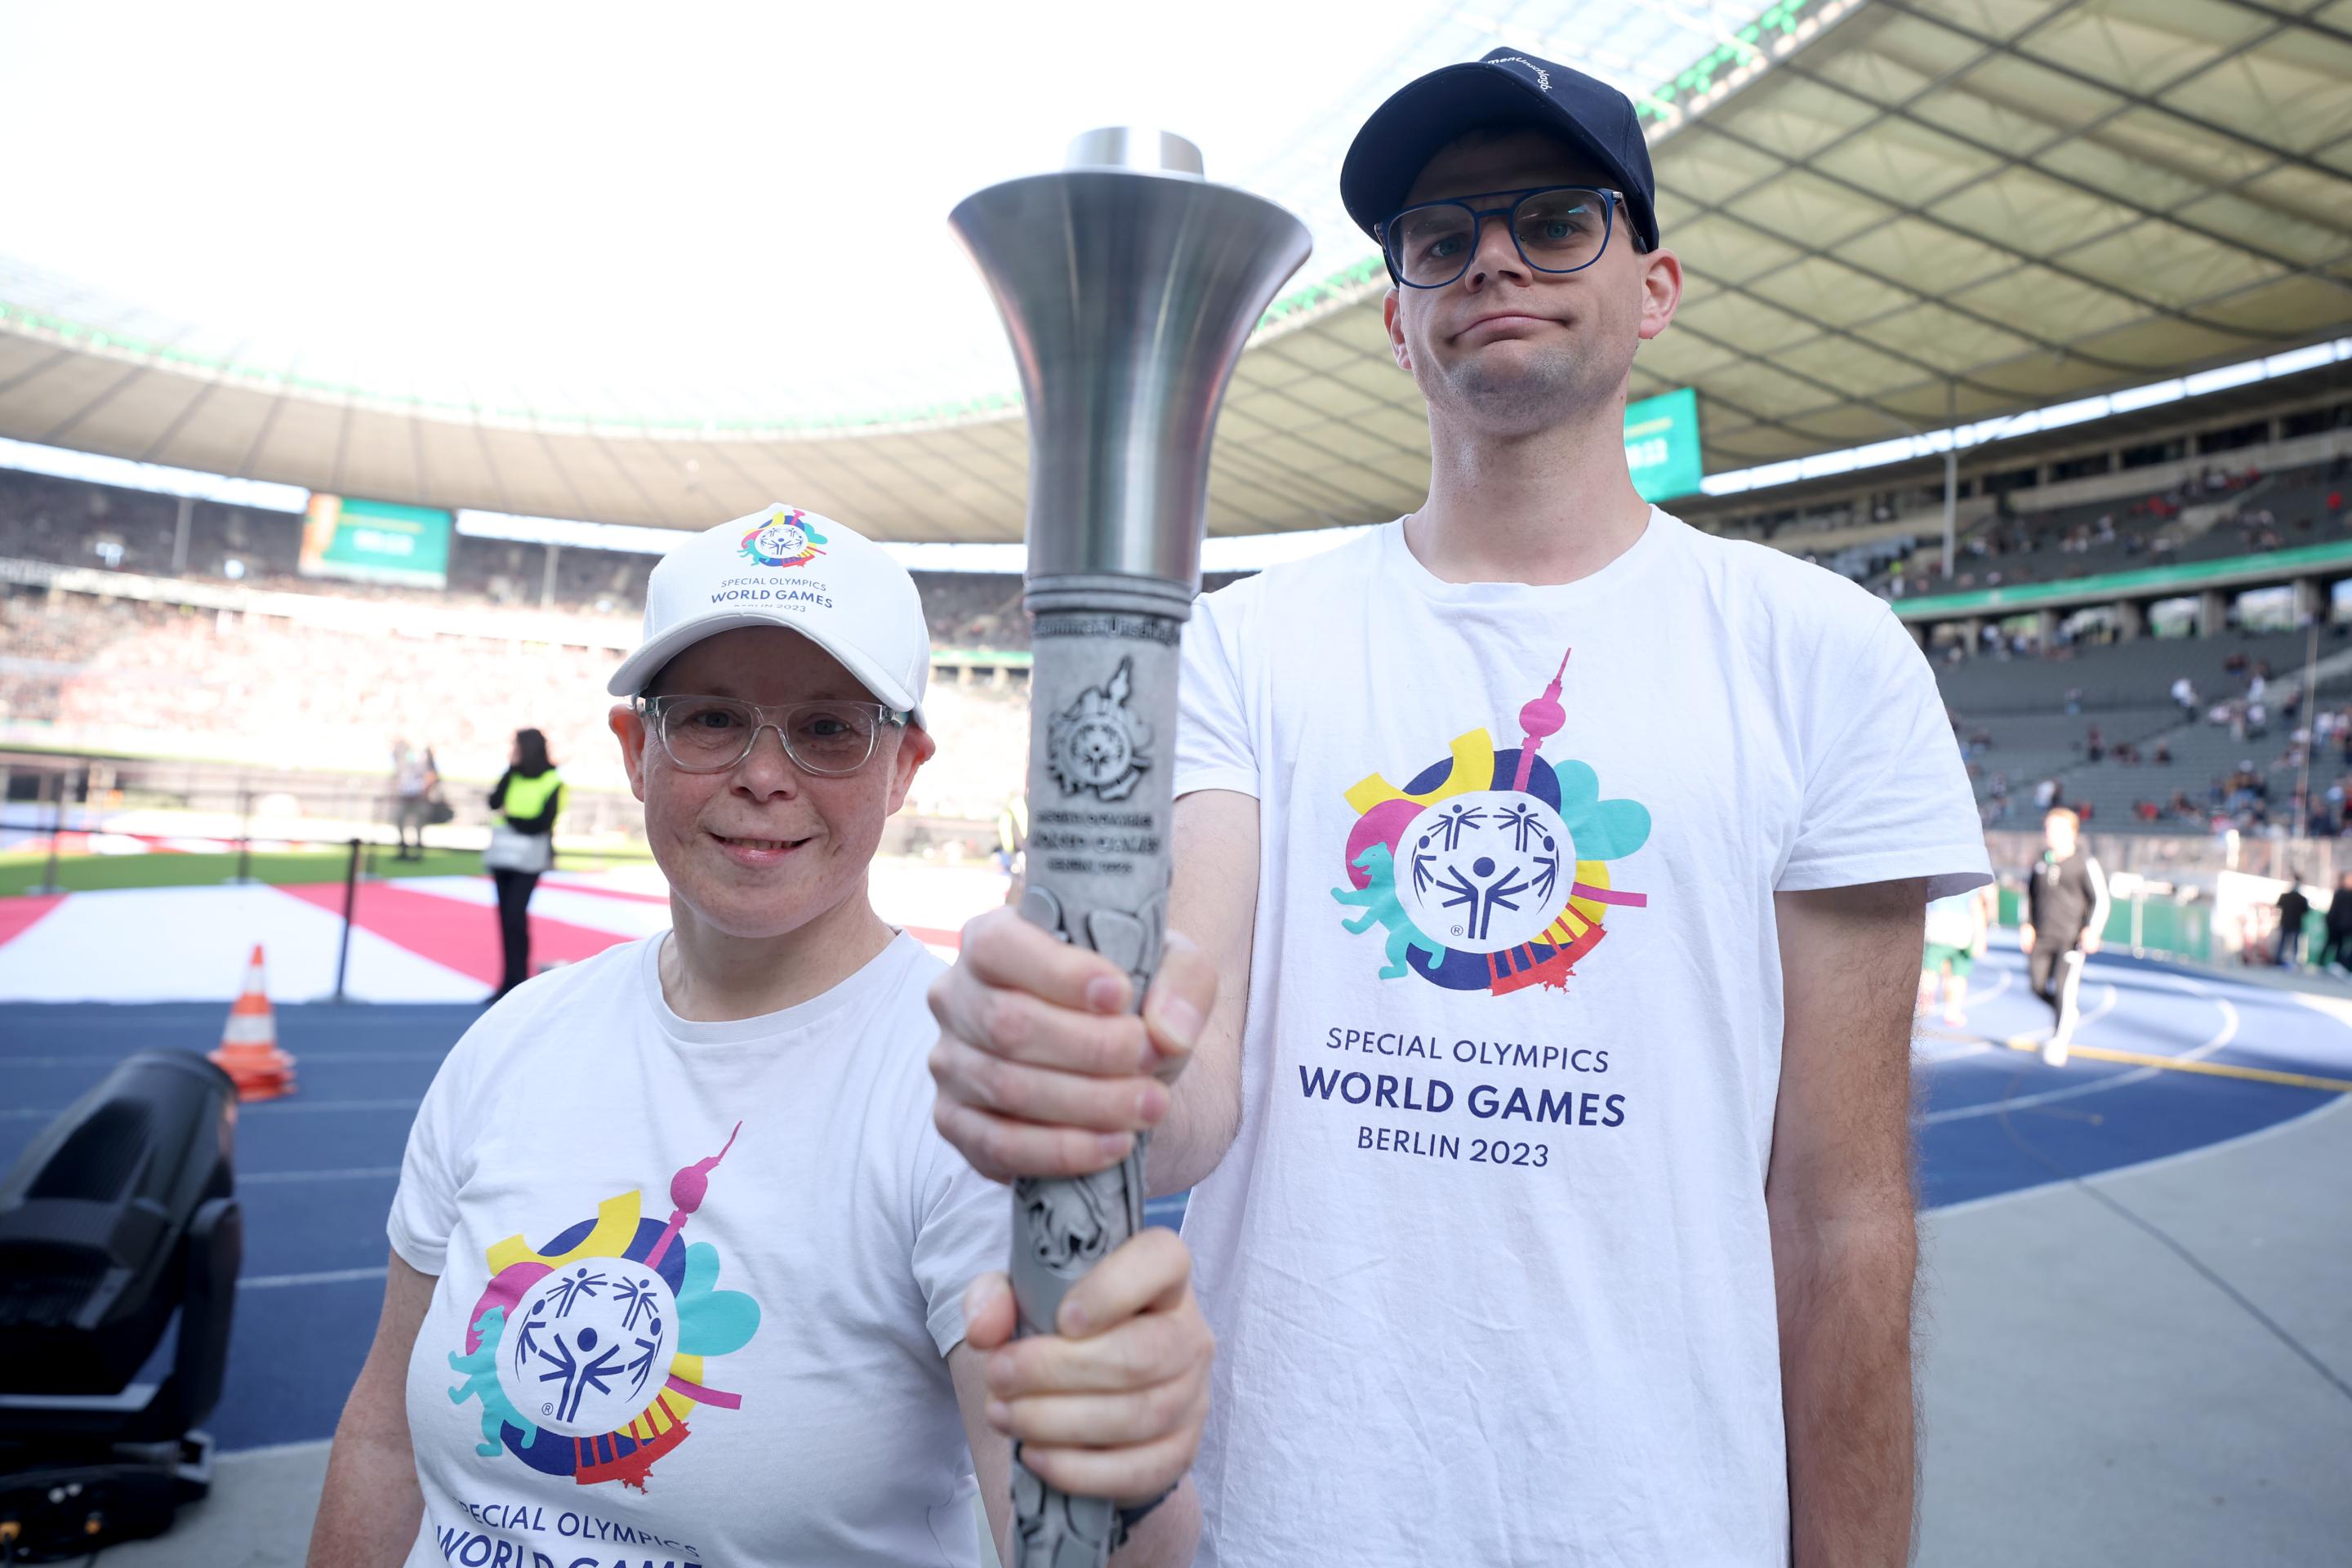 Special Olympics World Games Für dieses große Ziel kämpfen alle